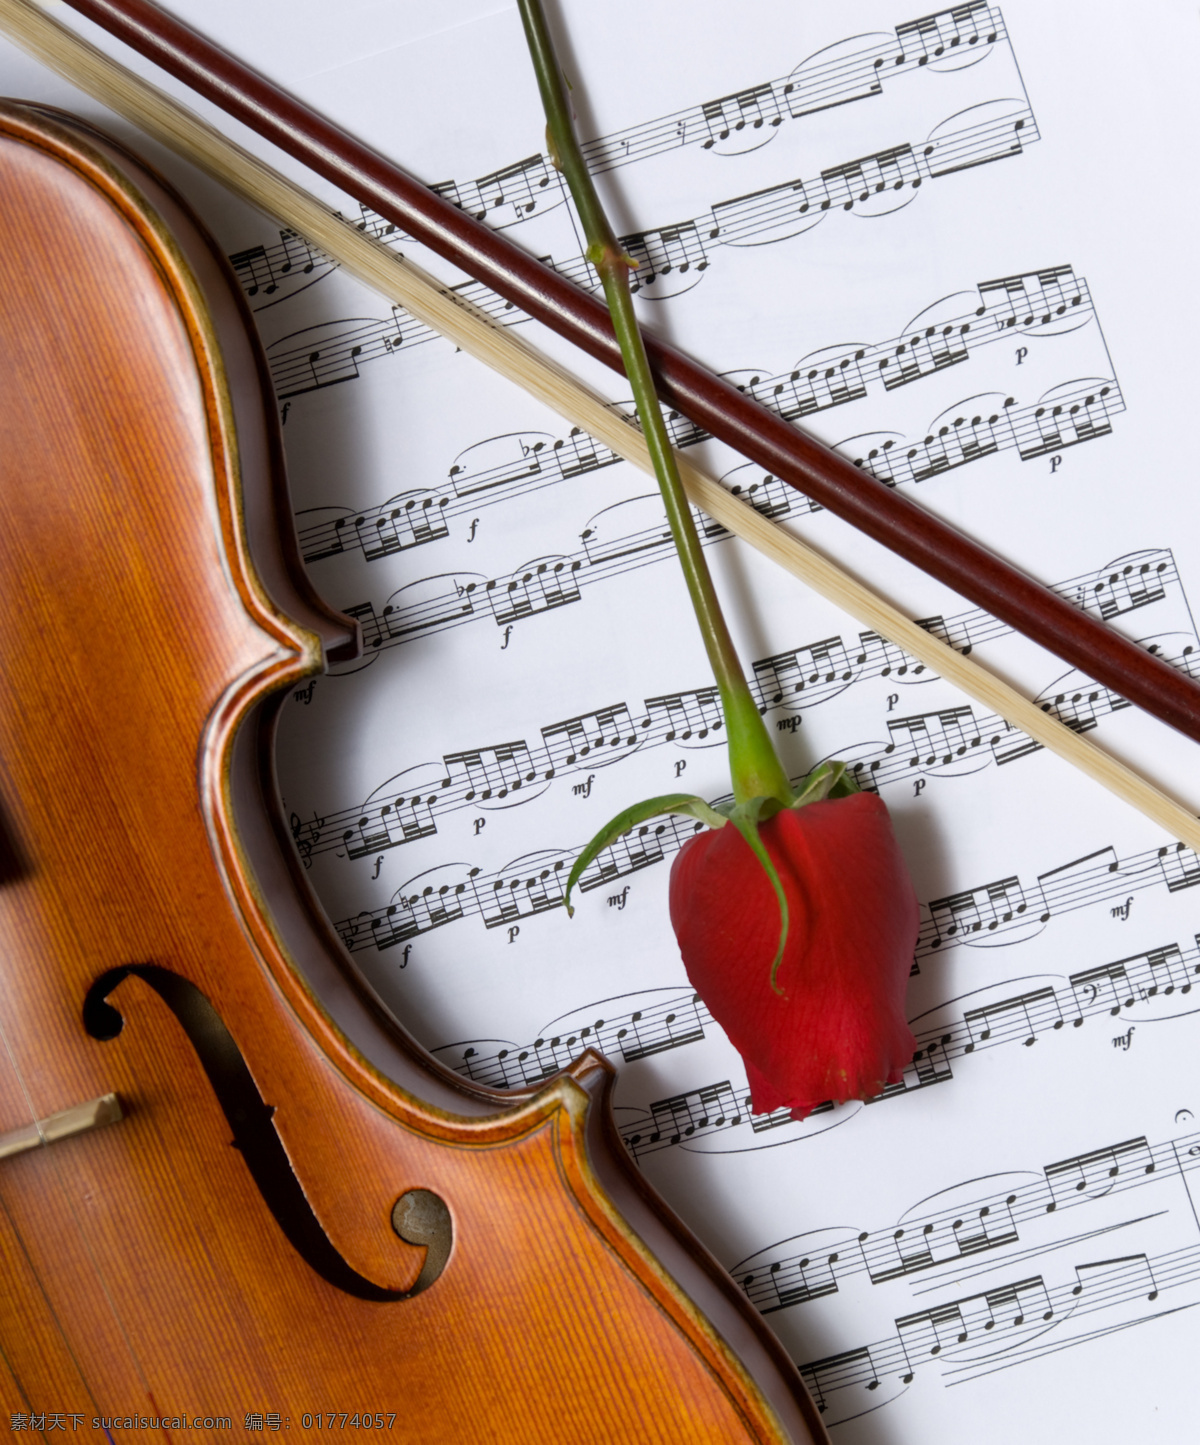 小提琴 红玫瑰 乐谱 乐器 玫瑰花 文化艺术 舞蹈音乐 木质小提琴 红木小提琴 psd源文件